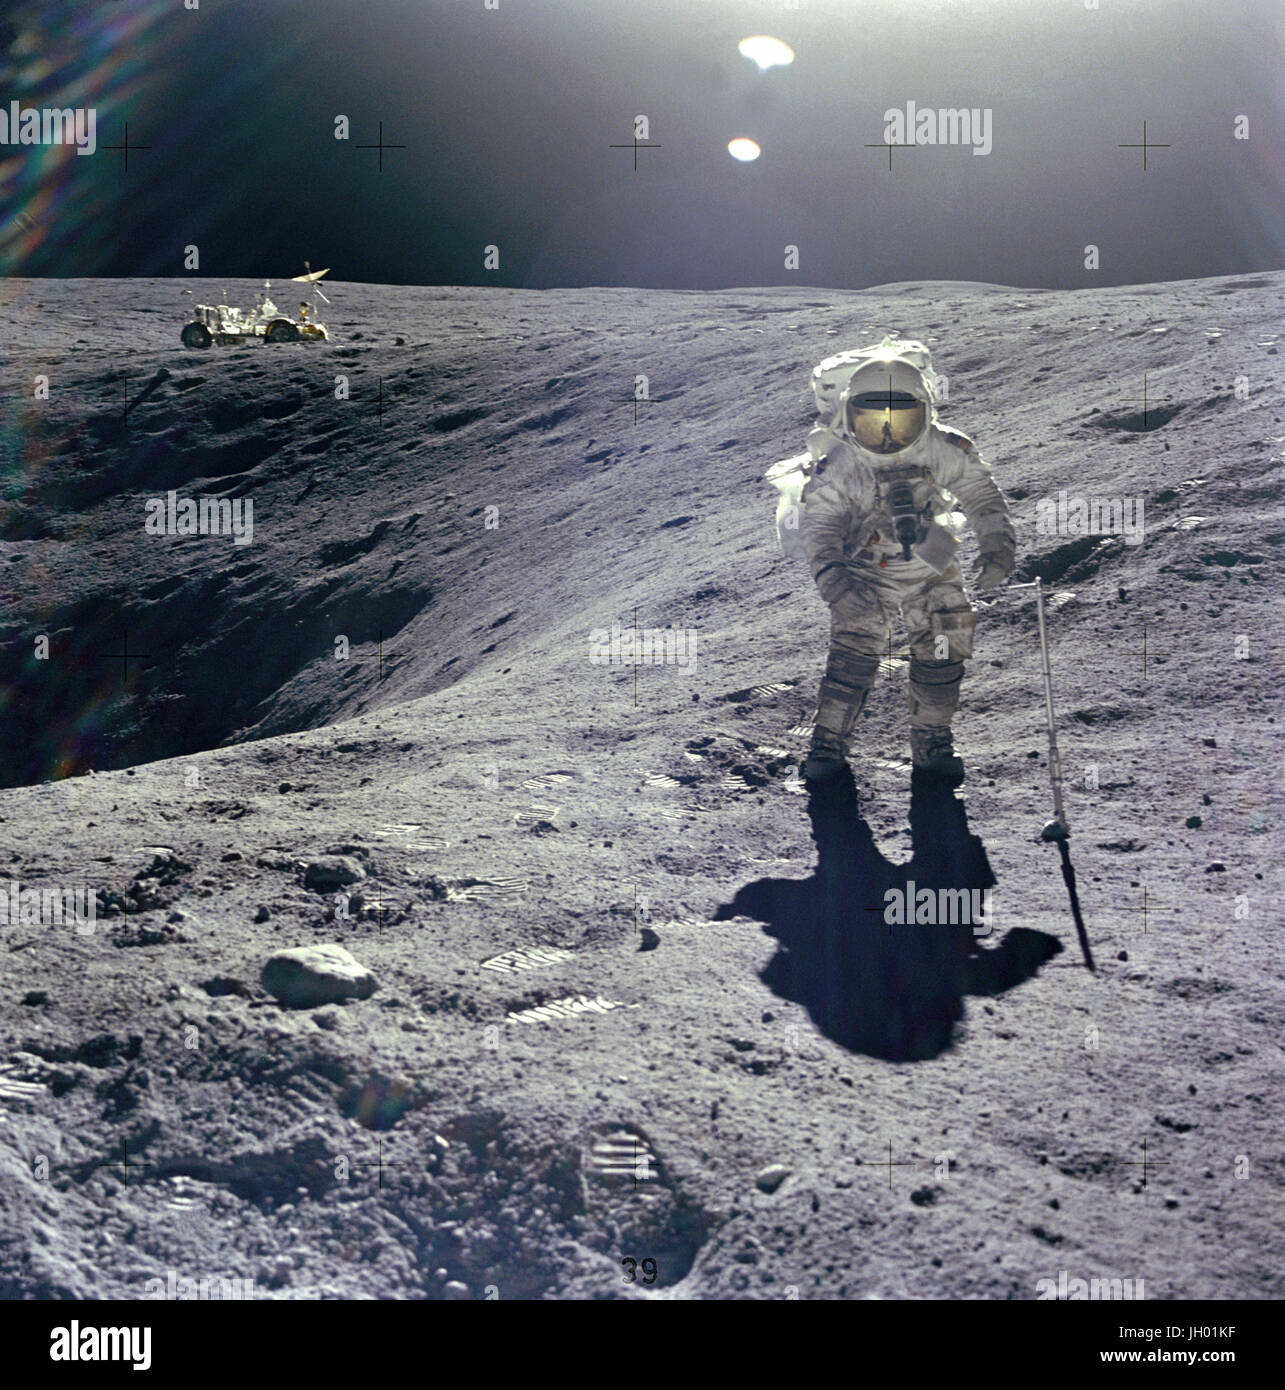 Astronaut Charles M. Duke Jr., Pilot der Mondlandefähre der Apollo 16-Mission wird fotografiert lunar Probenahmen an Station Nr. 1 während der ersten Apollo 16 Extravehicular Tätigkeit am Landeplatz Descartes. Dieses Bild, auf der Suche nach Osten, wurde von Astronaut John W. Young, Kommandant aufgenommen. Herzog steht an Pflaume Kraterrand, die 40 Meter im Durchmesser und 10 Meter tief ist. Links im Hintergrund sehen die geparkten Lunar Roving Vehicle. Fotograf: NASA / John W. Young Stockfoto